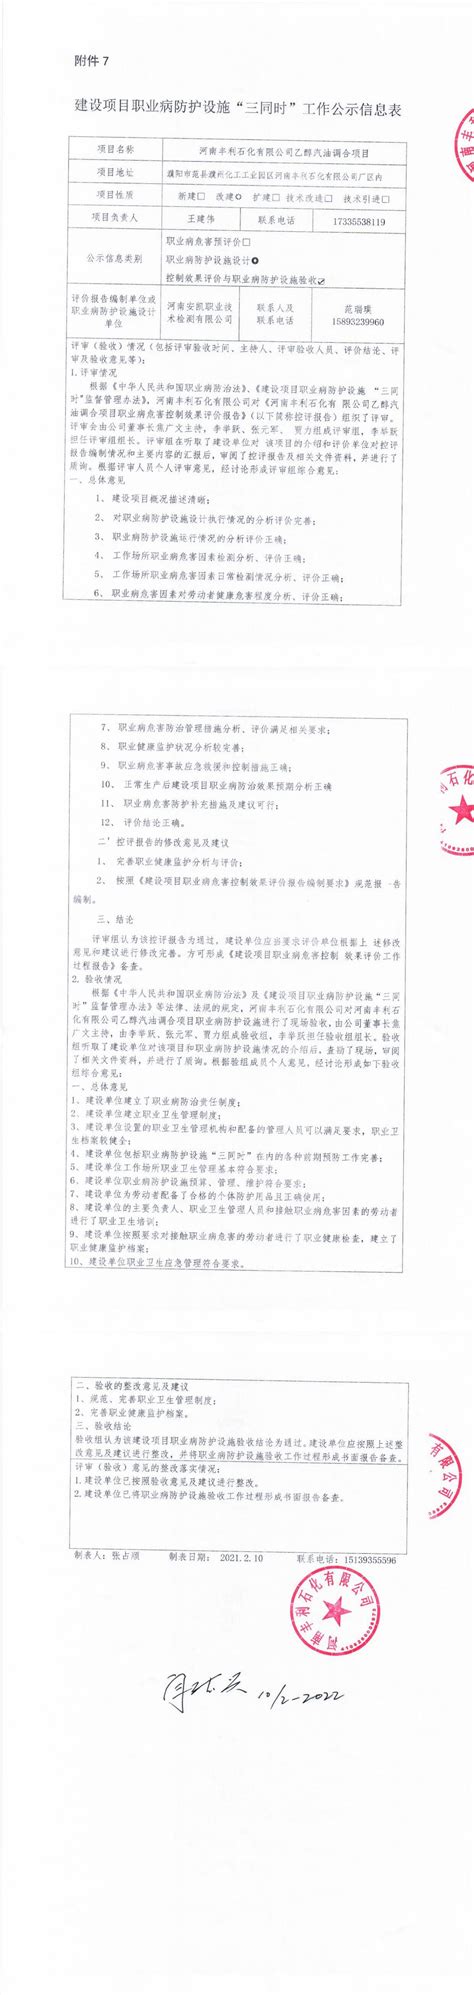 河南丰利石化有限公司职业卫生公示-河南丰利石化有限公司